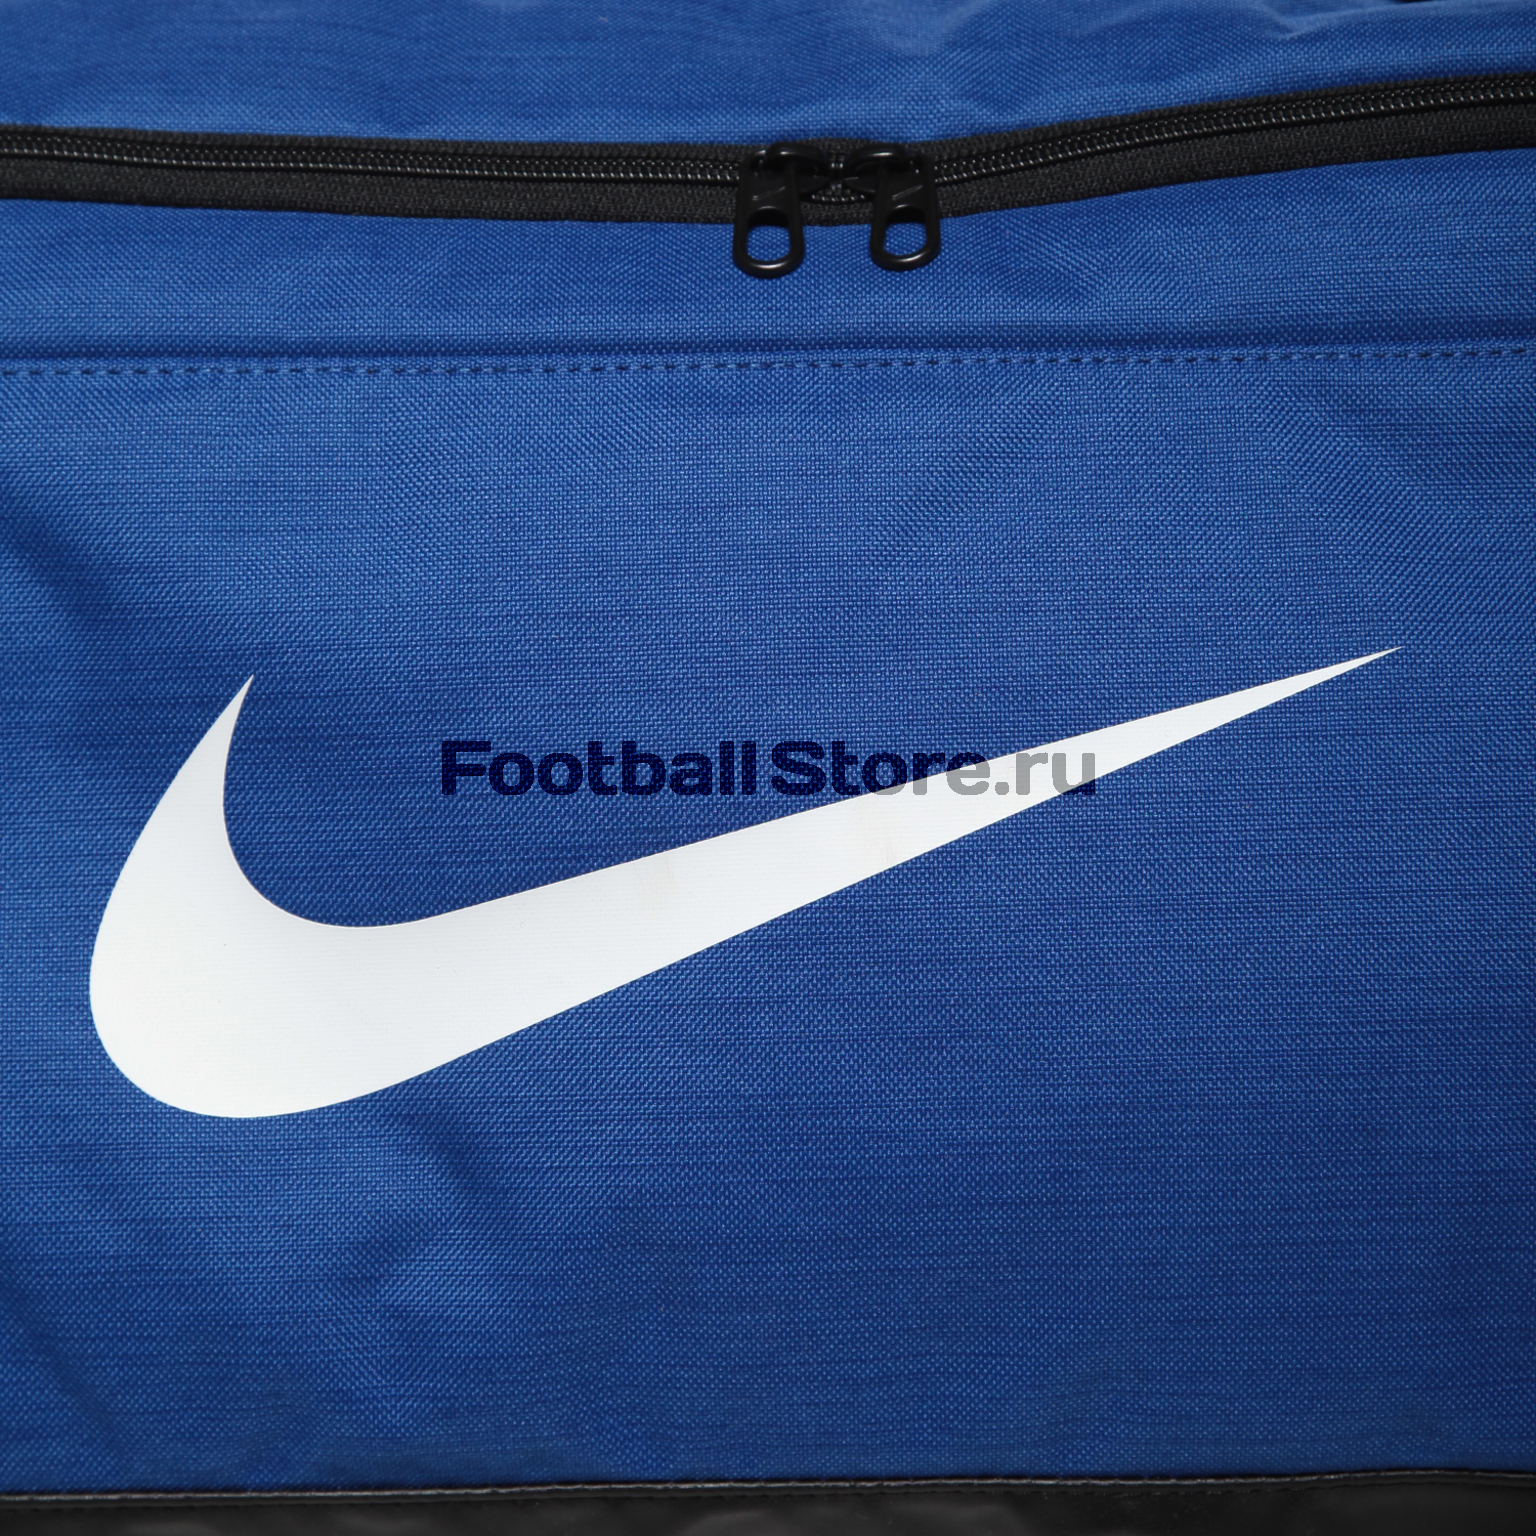 Сумка Nike Brasilia M Duffel Bag BA5334-480